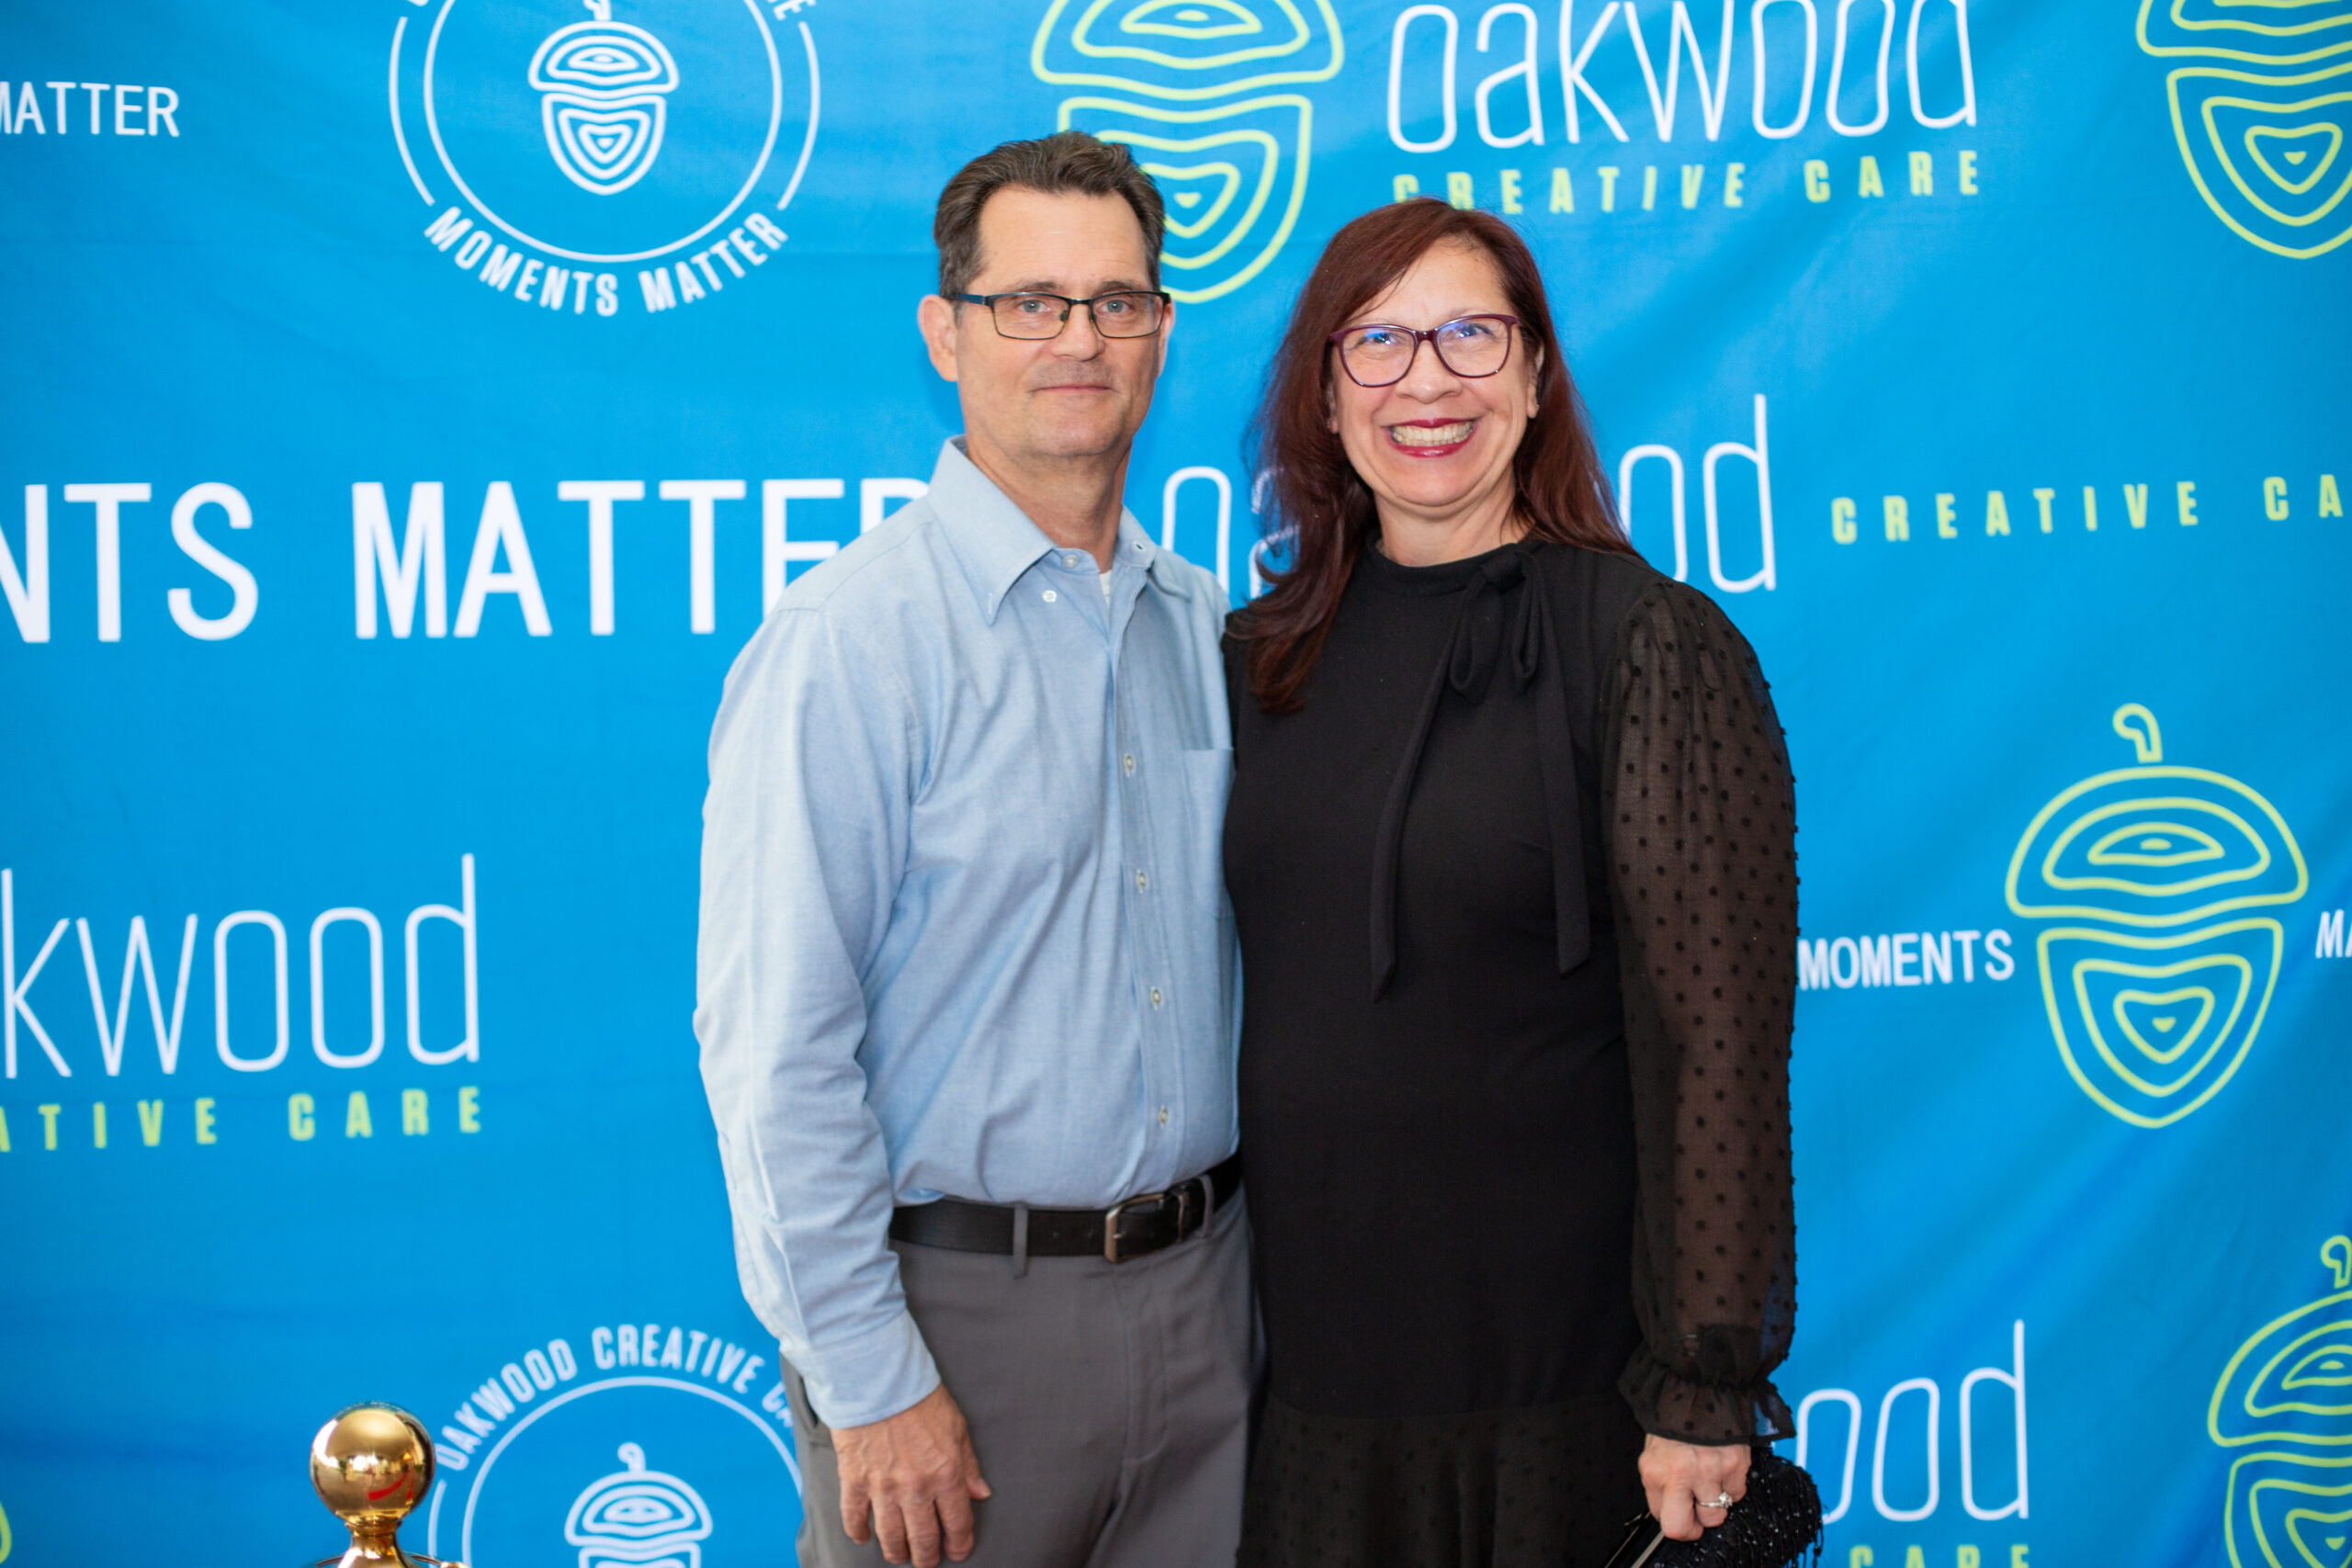 Oakwood Creative Care: Moments Matter 2022